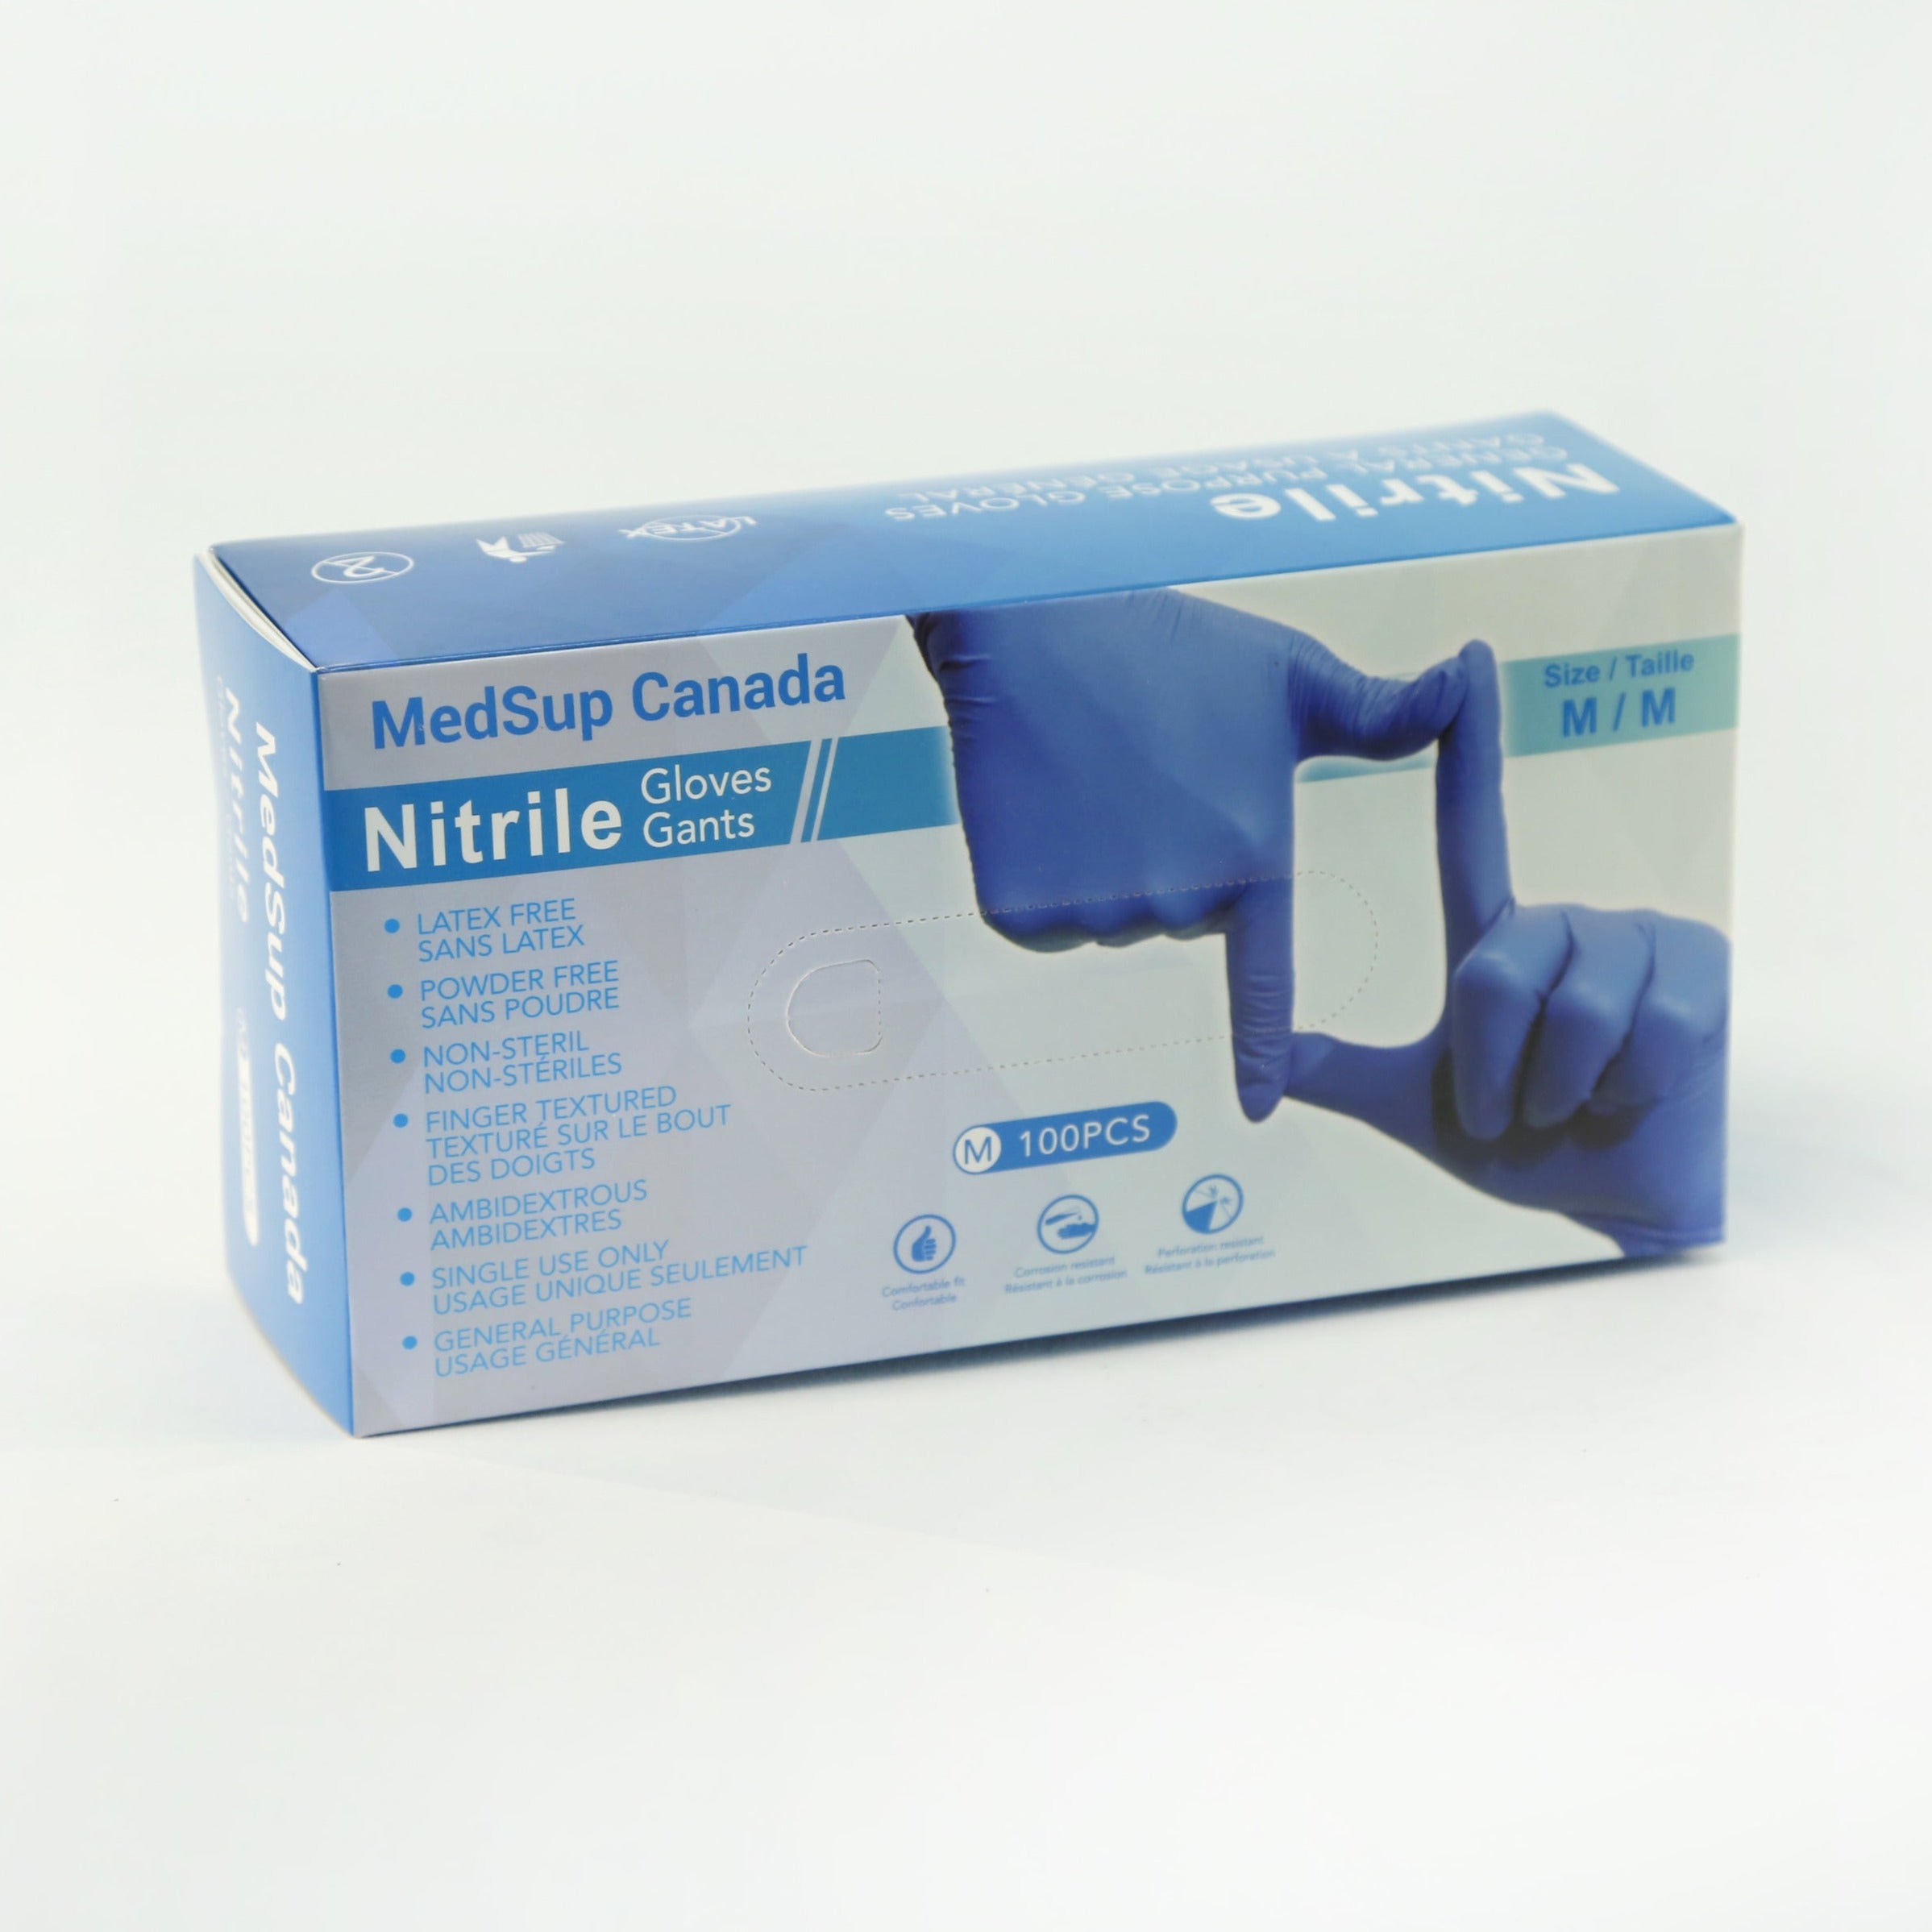 Gants en nitrile - 100/boîte - MedSup Canada